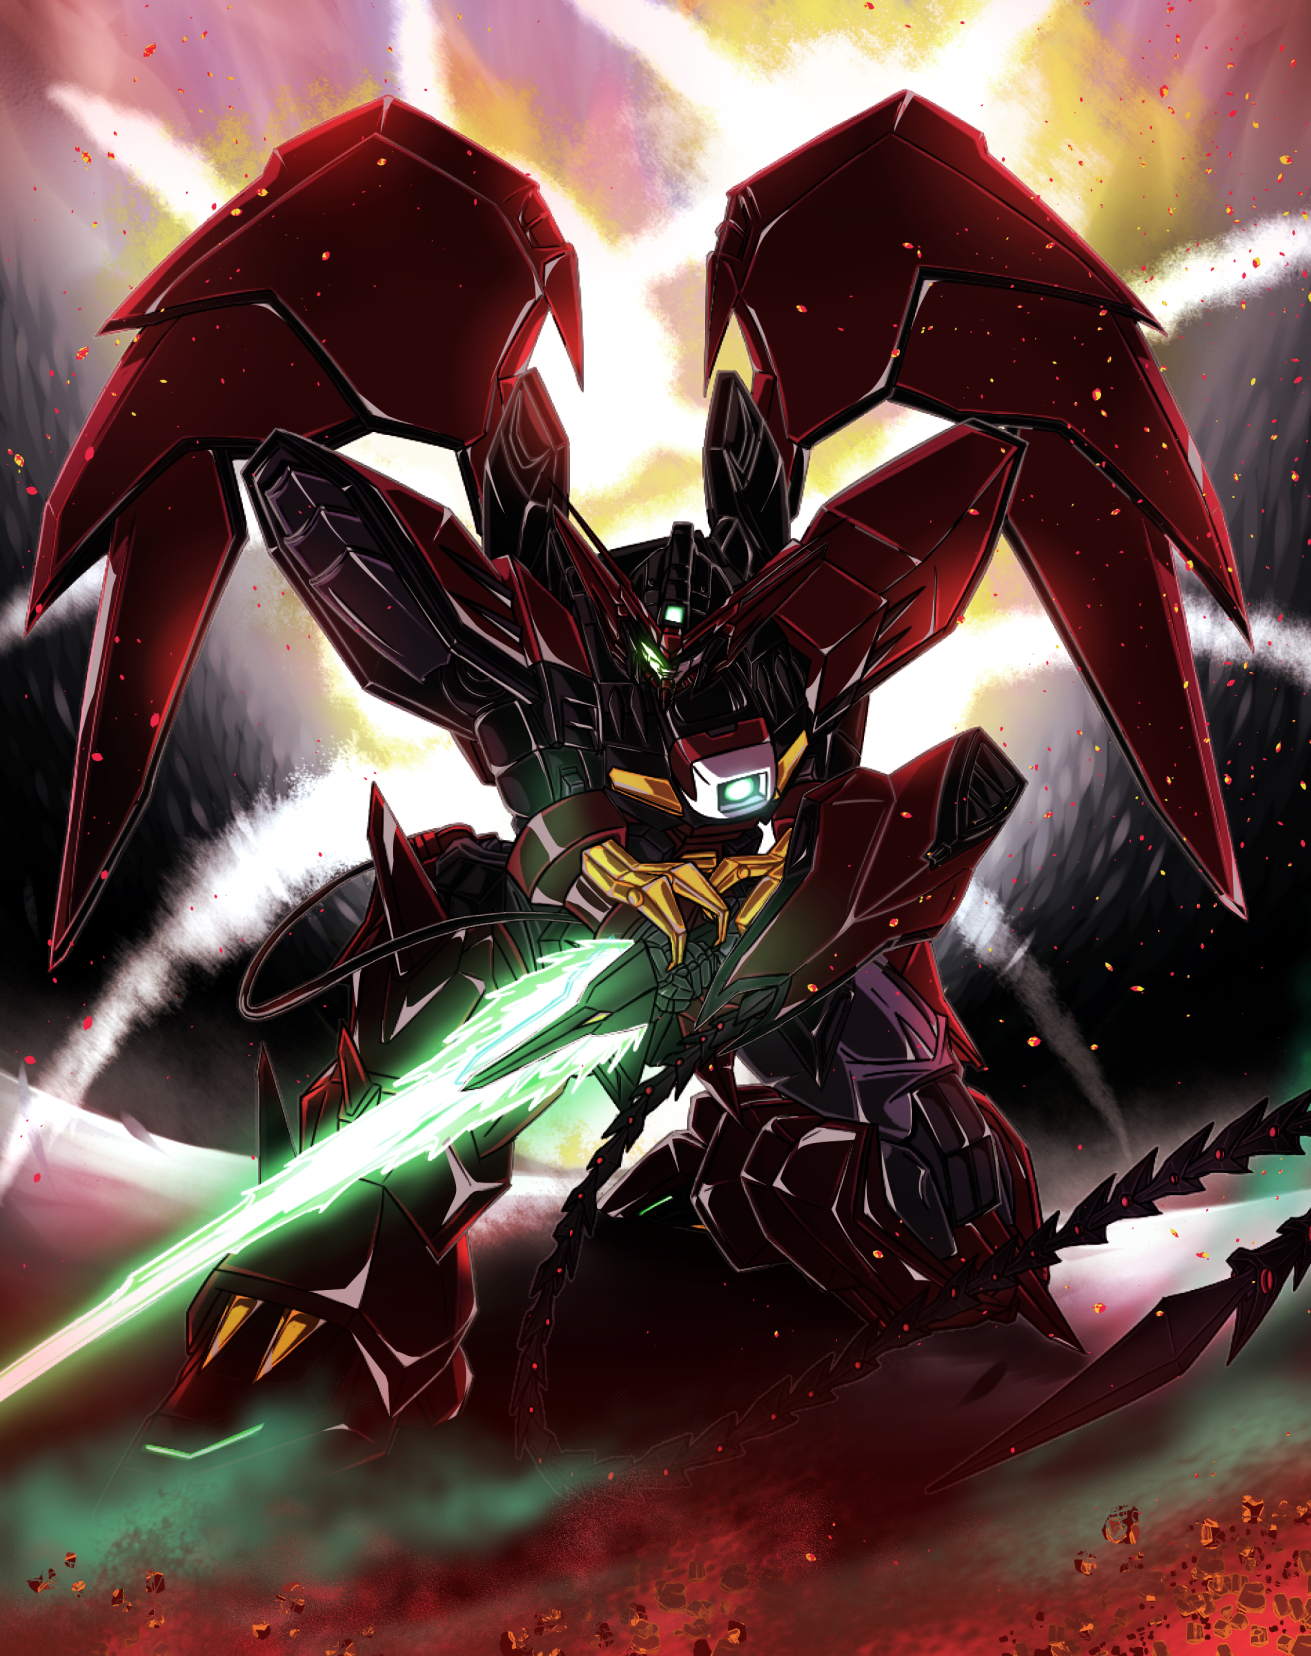 Anime 1311x1656 anime mechs Gundam Gundam Epyon Mobile Suit Gundam Wing Super Robot Taisen artwork digital art fan art